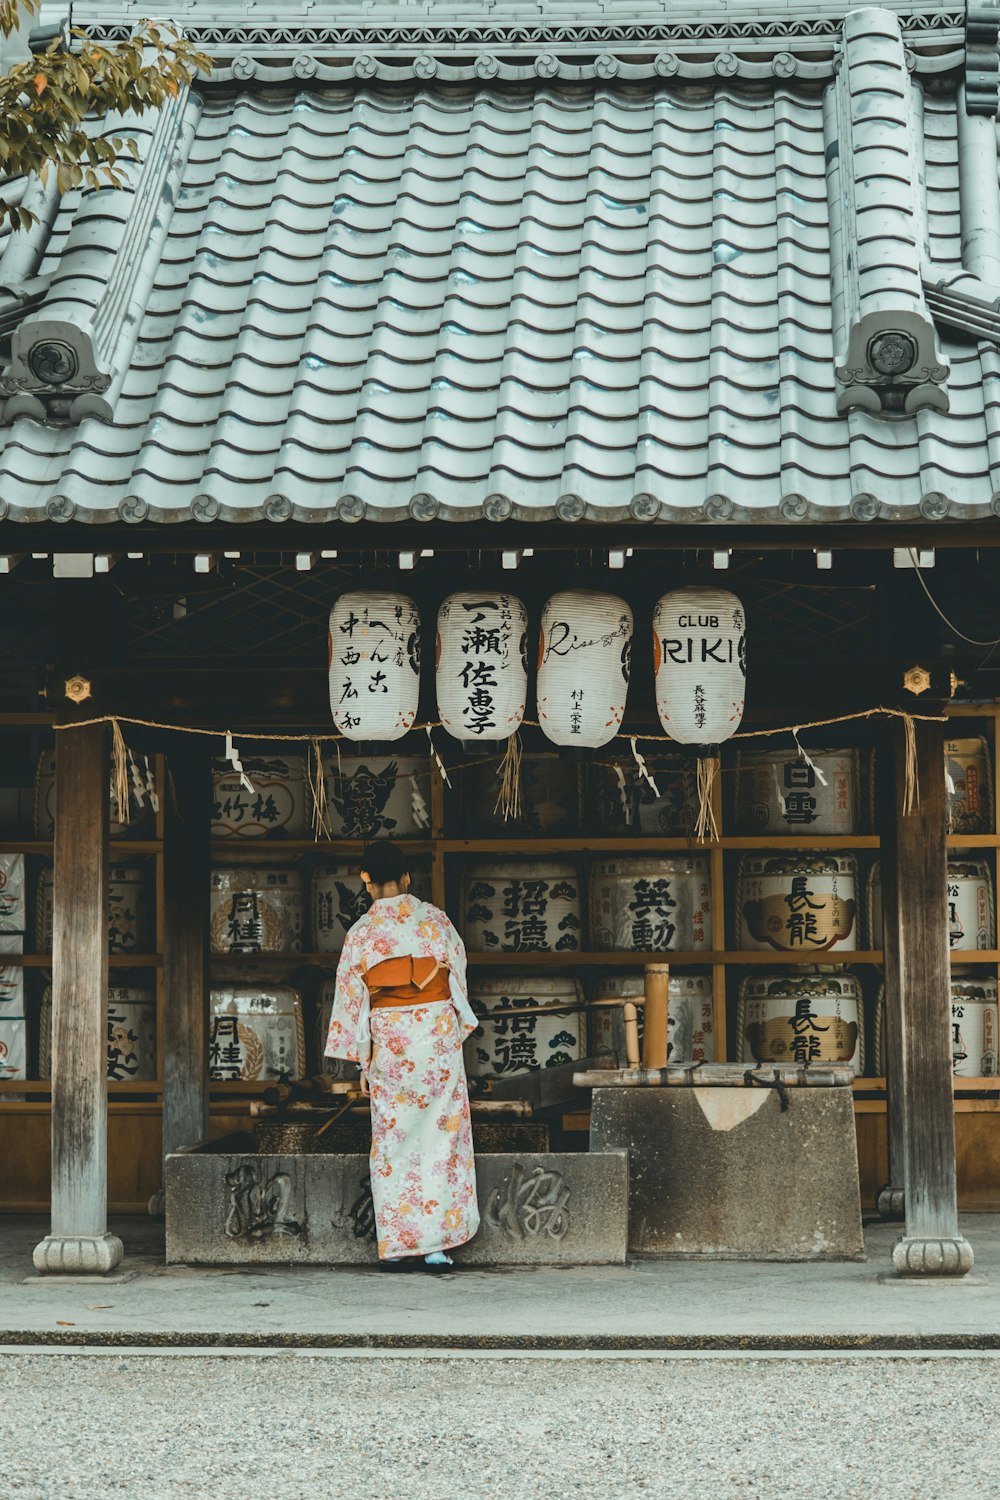 femme portant une robe de kimono orange et blanche debout près de la maison